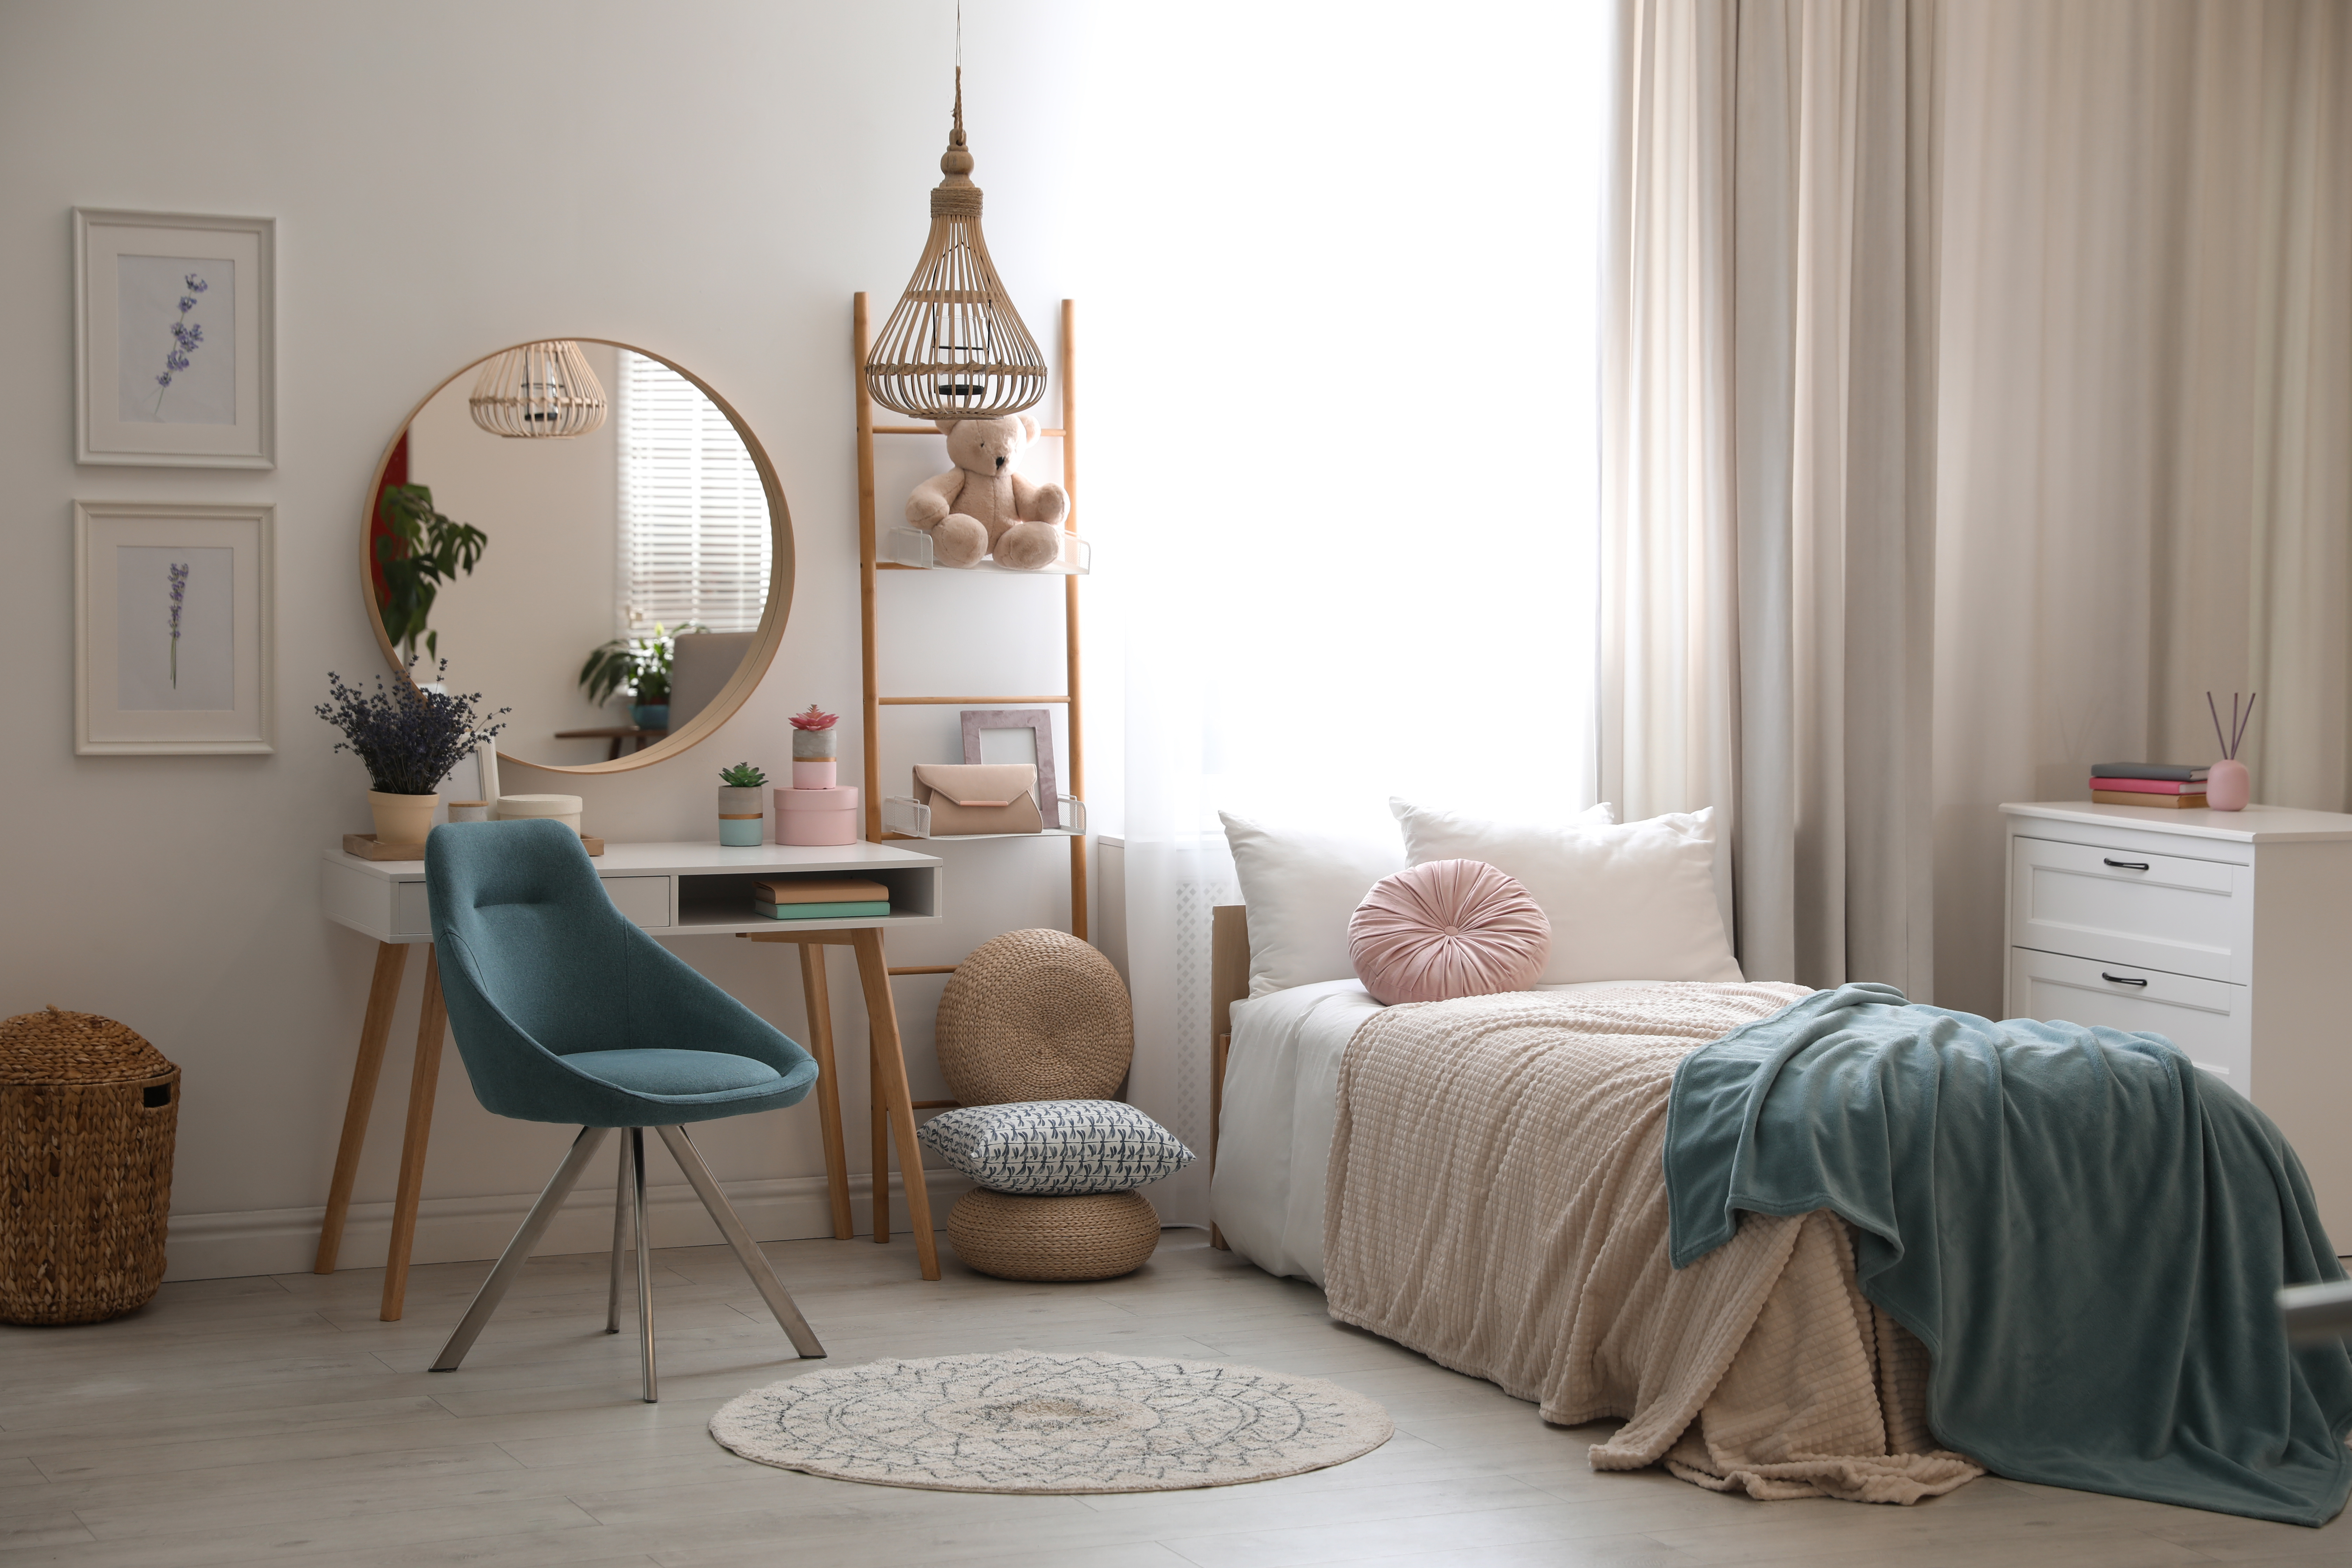 Dormitorio de una adolescente | Fuente: Shutterstock